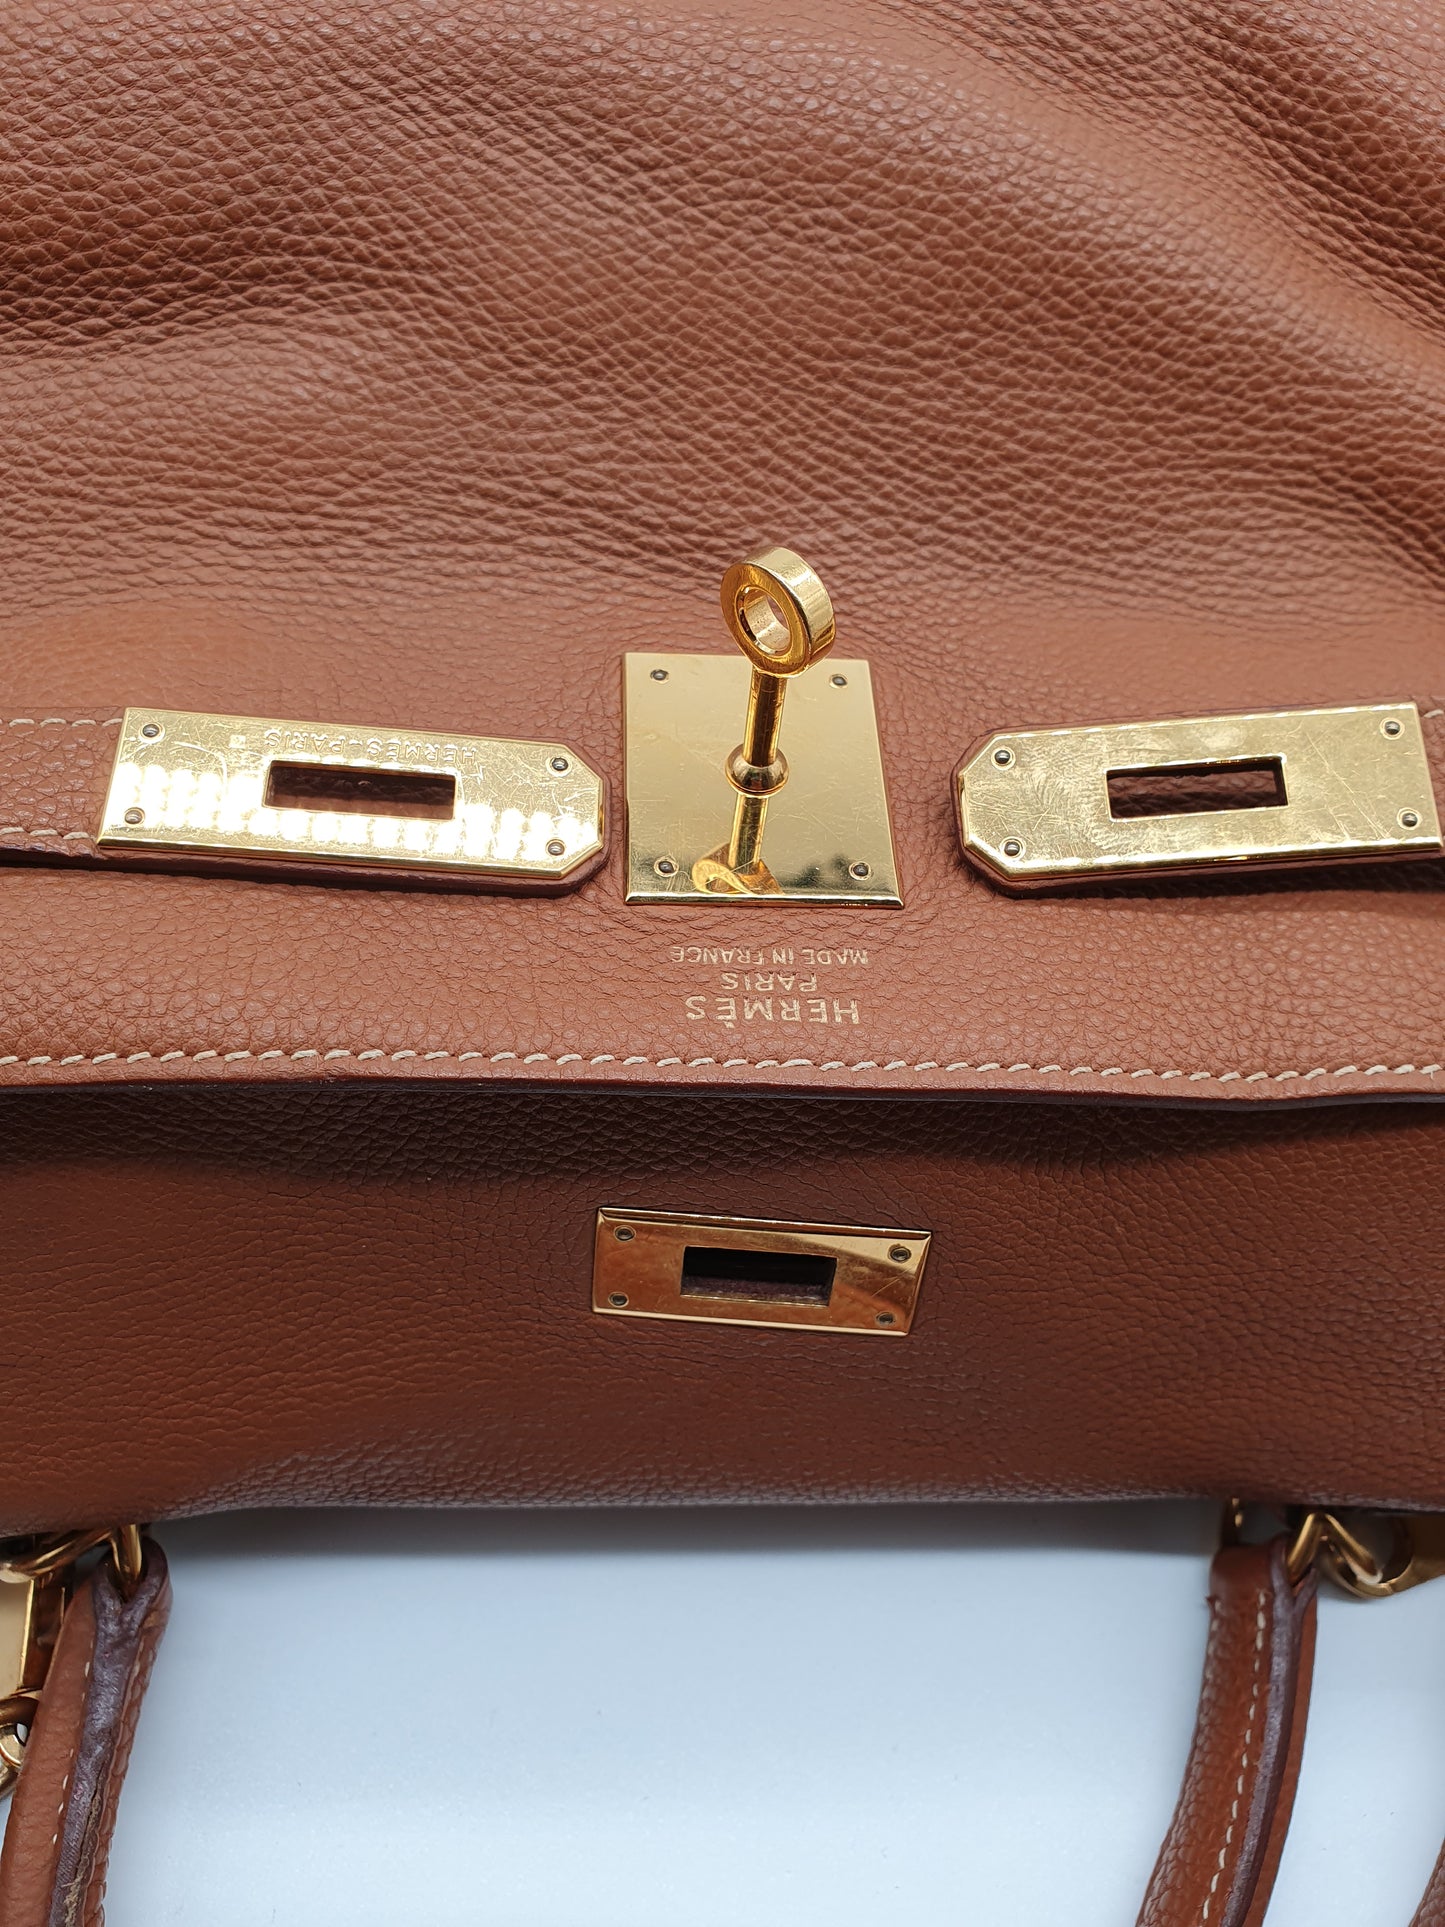 Hermes Kelly handbag